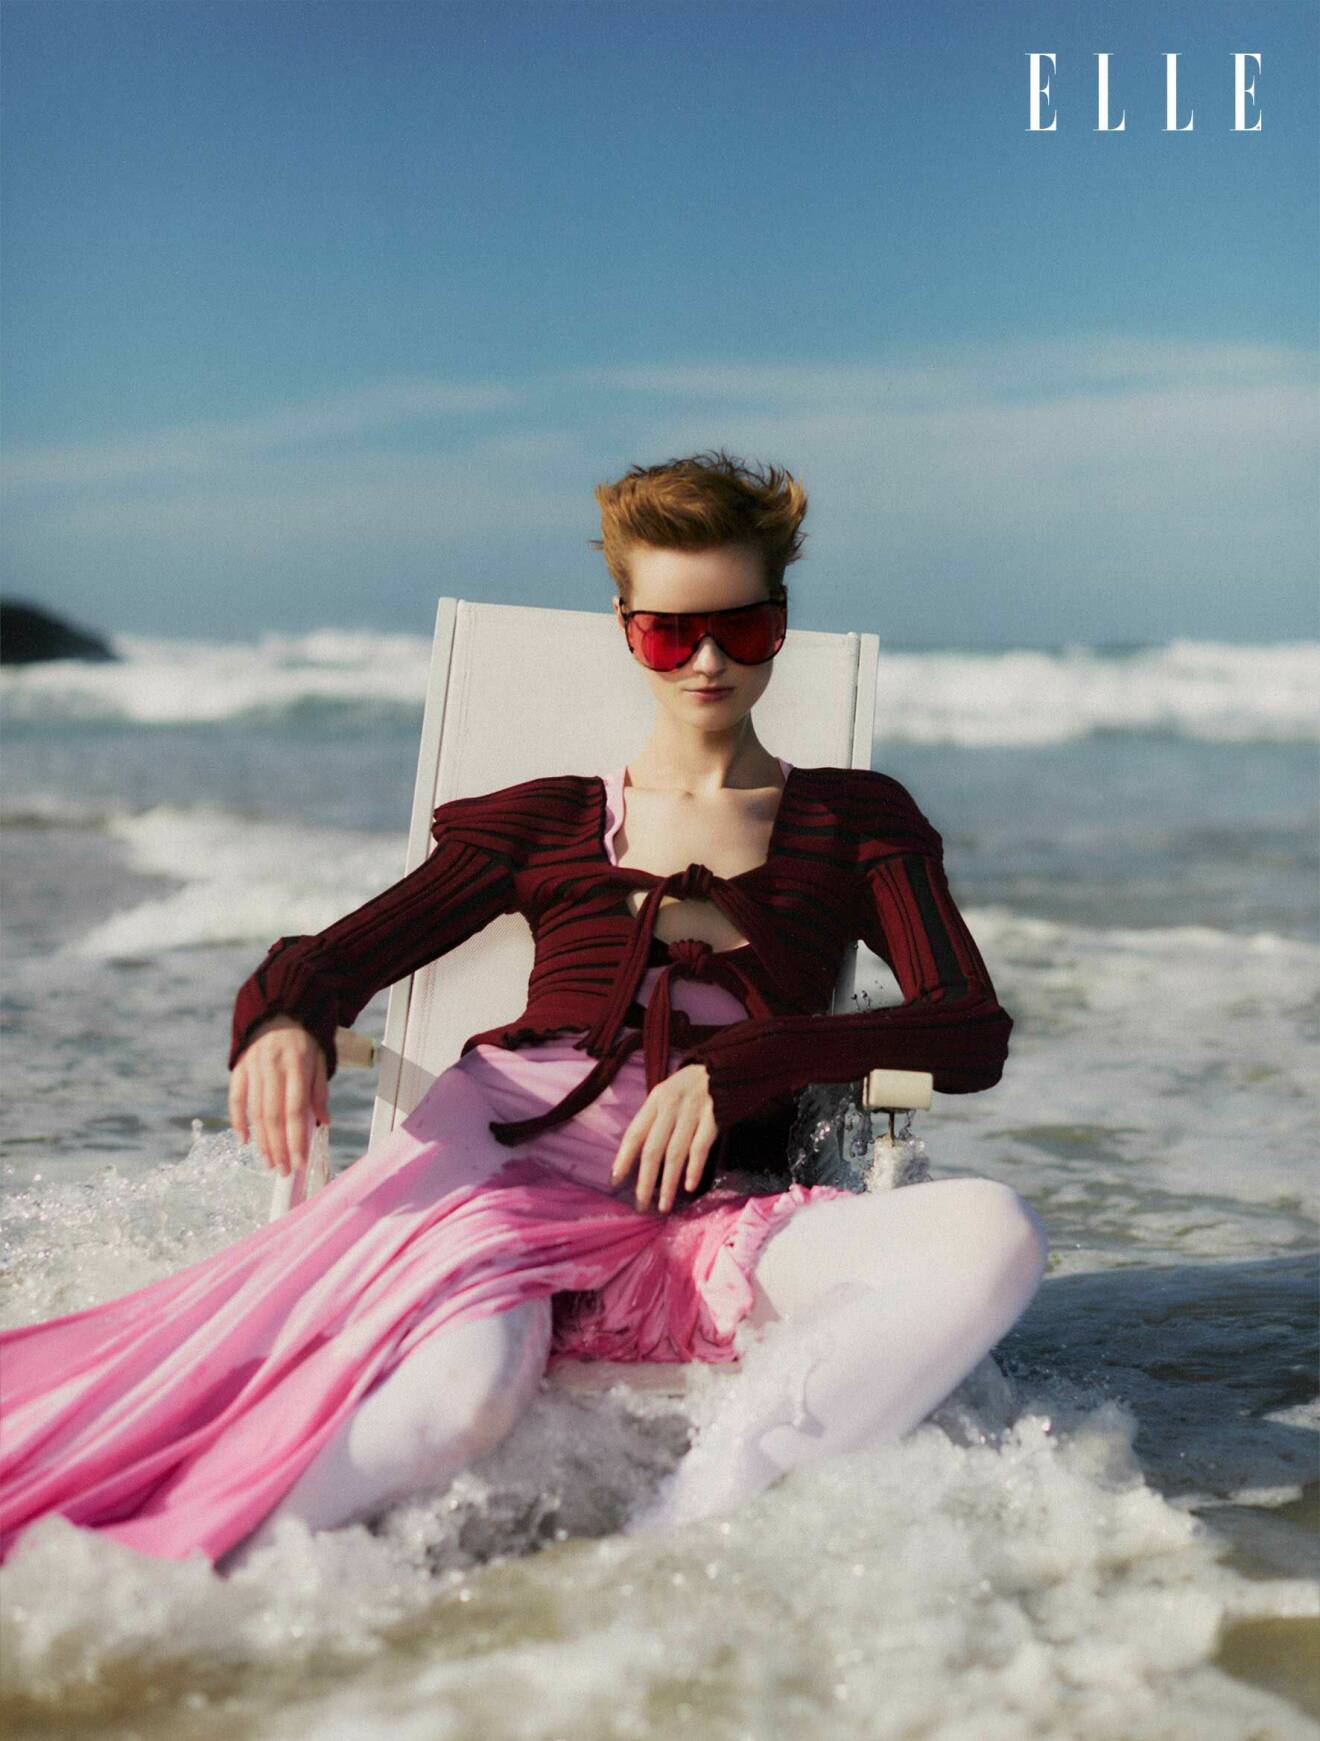 Modellen sitter i en stol i havet, hon har på sig en rosa klänning från Christopher Esber och en långärmad tröja från Katharina Dubbick